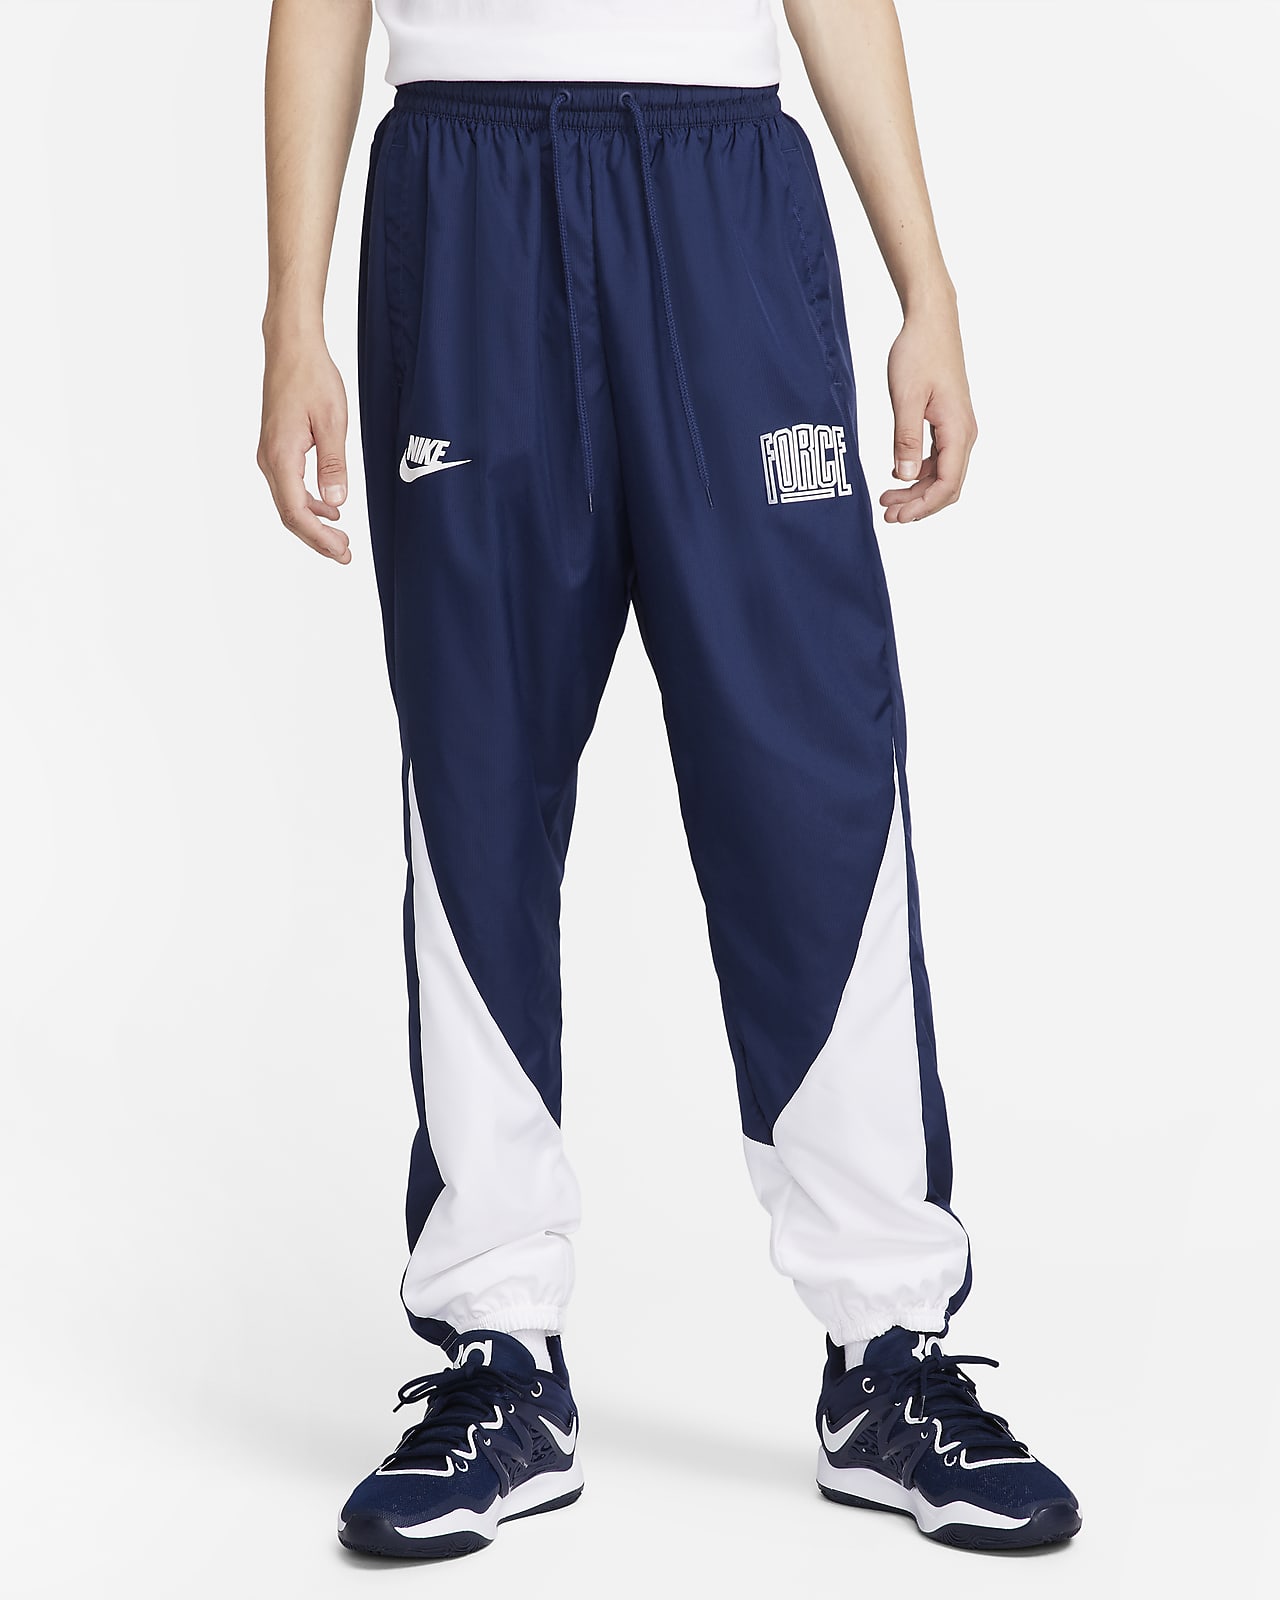 Nike Starting 5 Men's Basketball Pants.